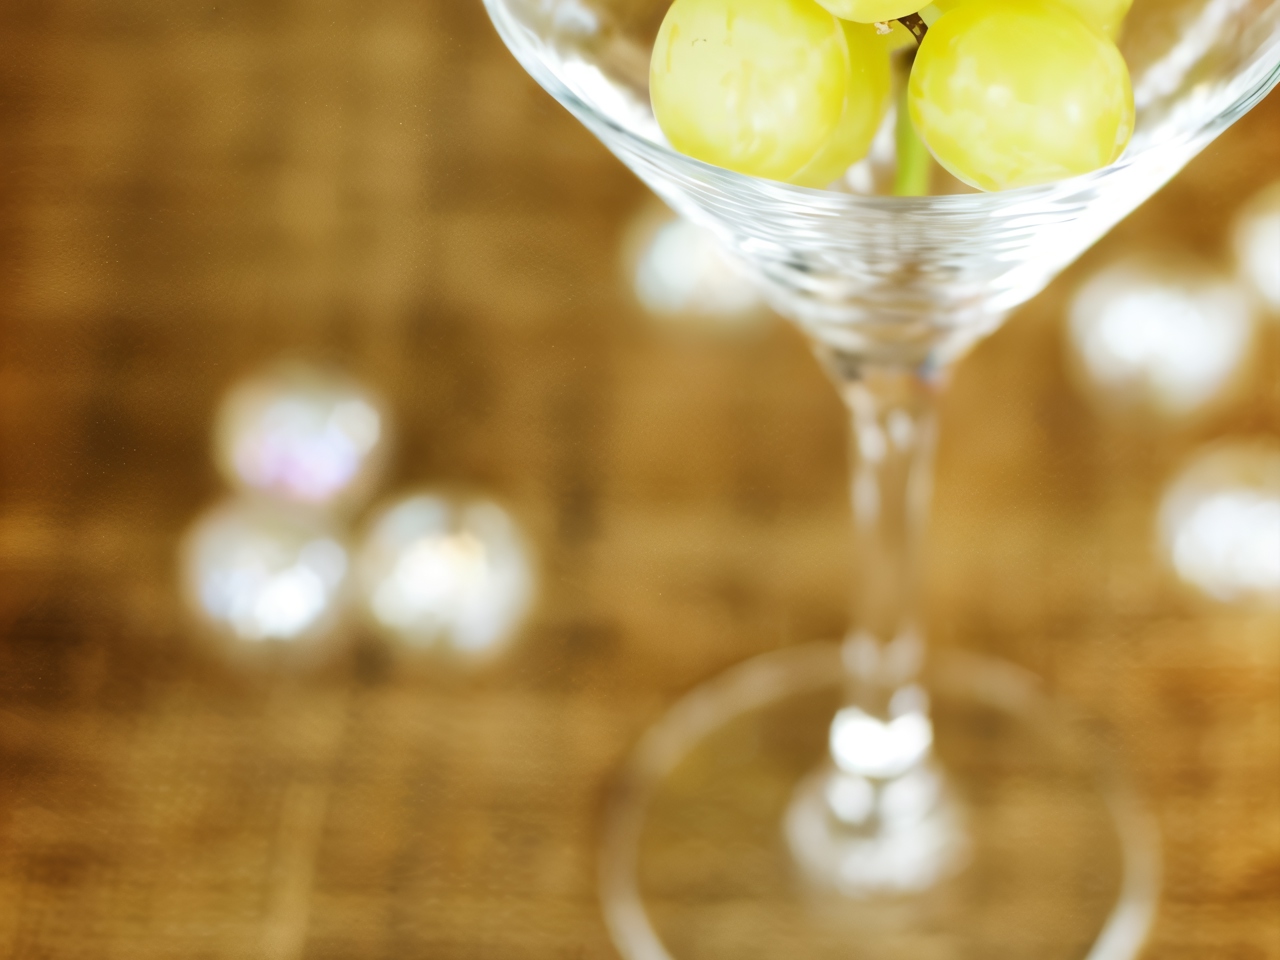 Домашняя настойка из винограда на водке или спирте - рецепты